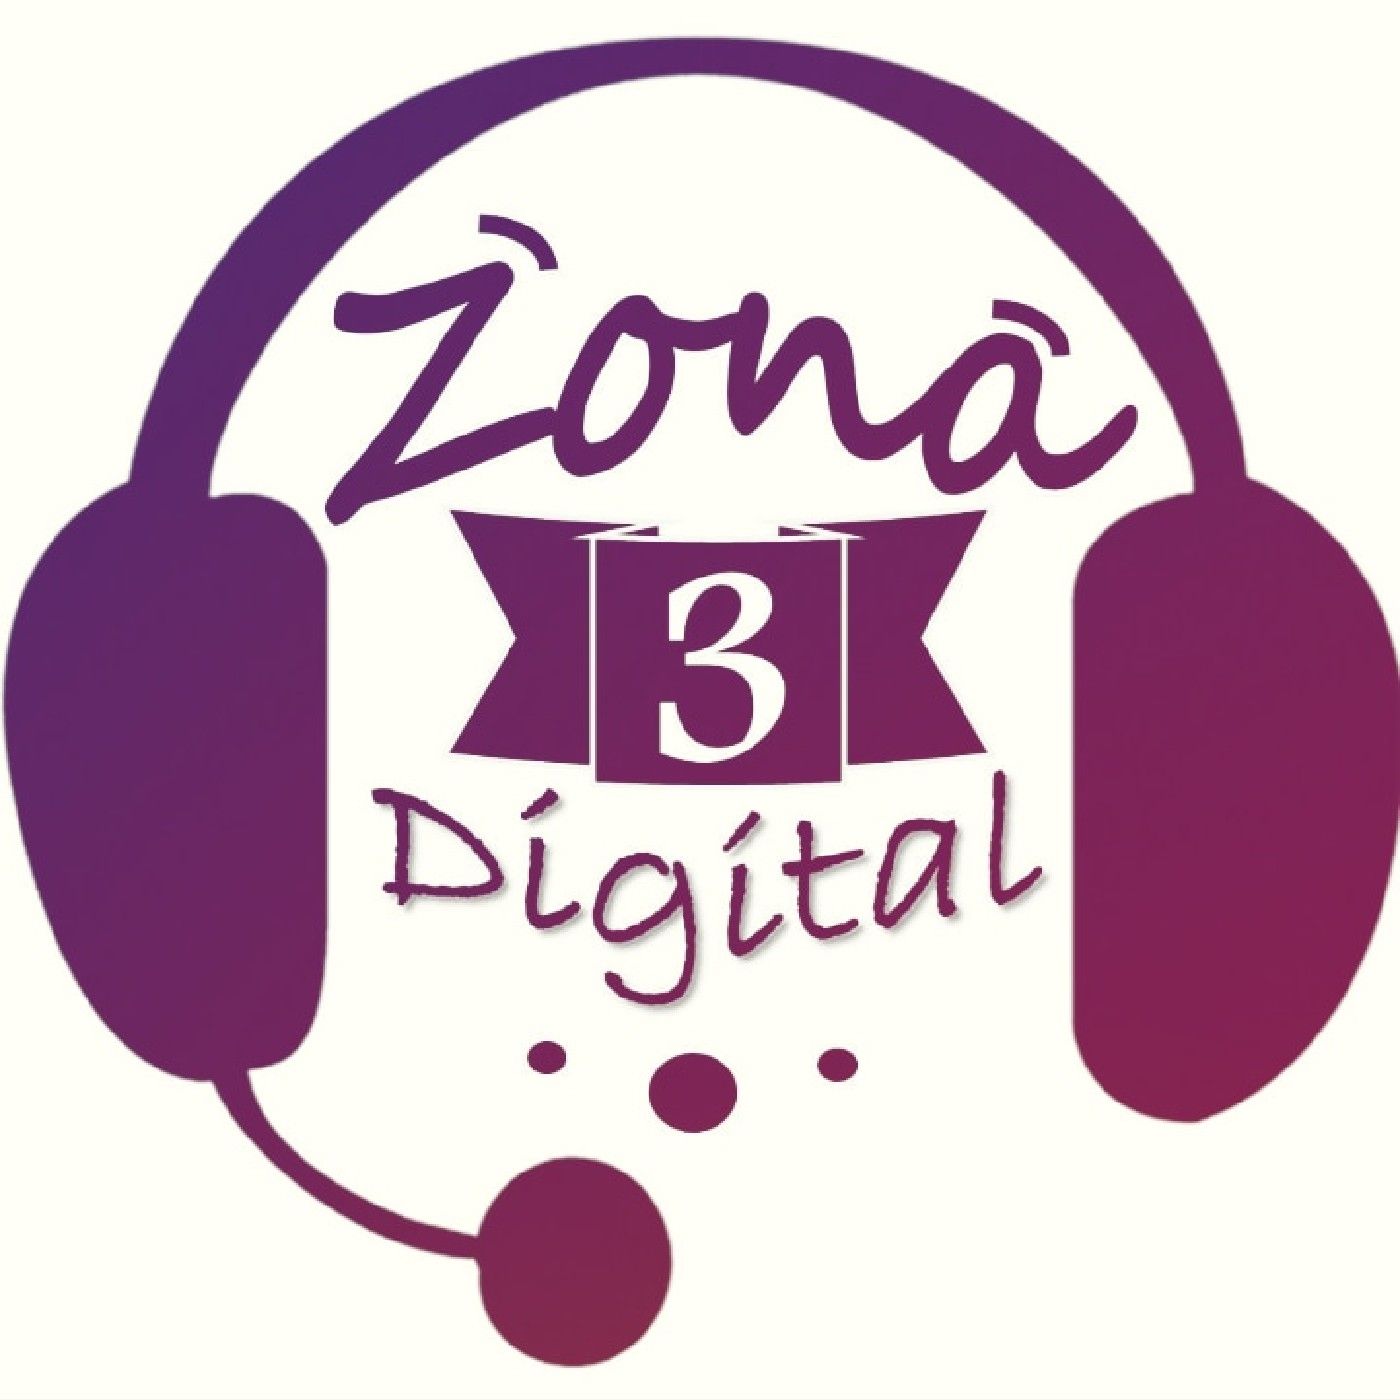 Zona3 Digital